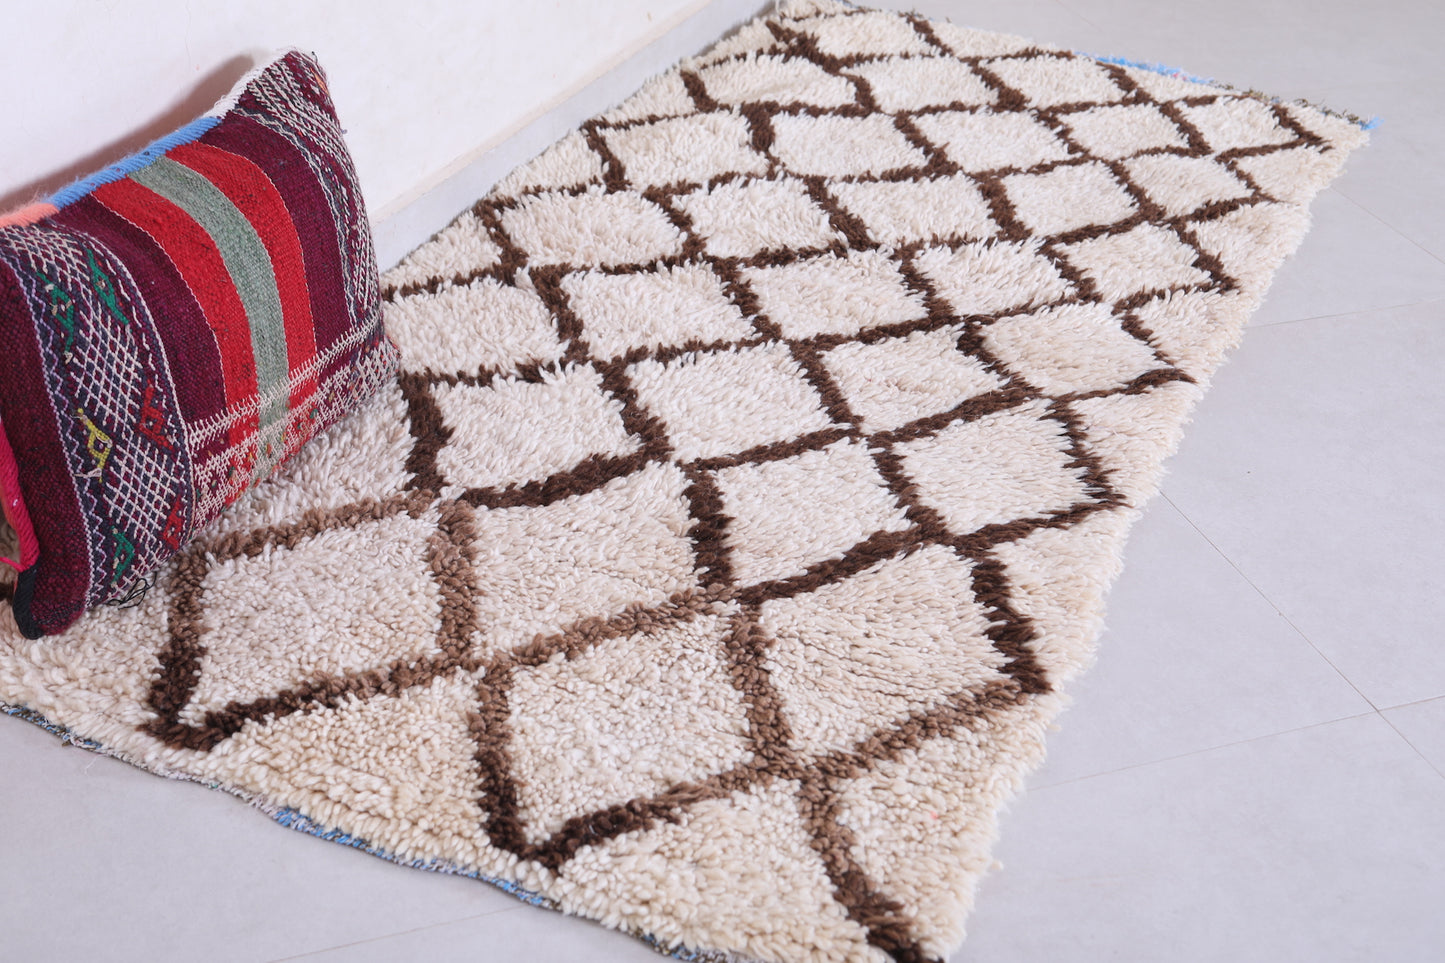 Vintage handmade moroccan berber runner rug 2.7 FT X 5.9 FT